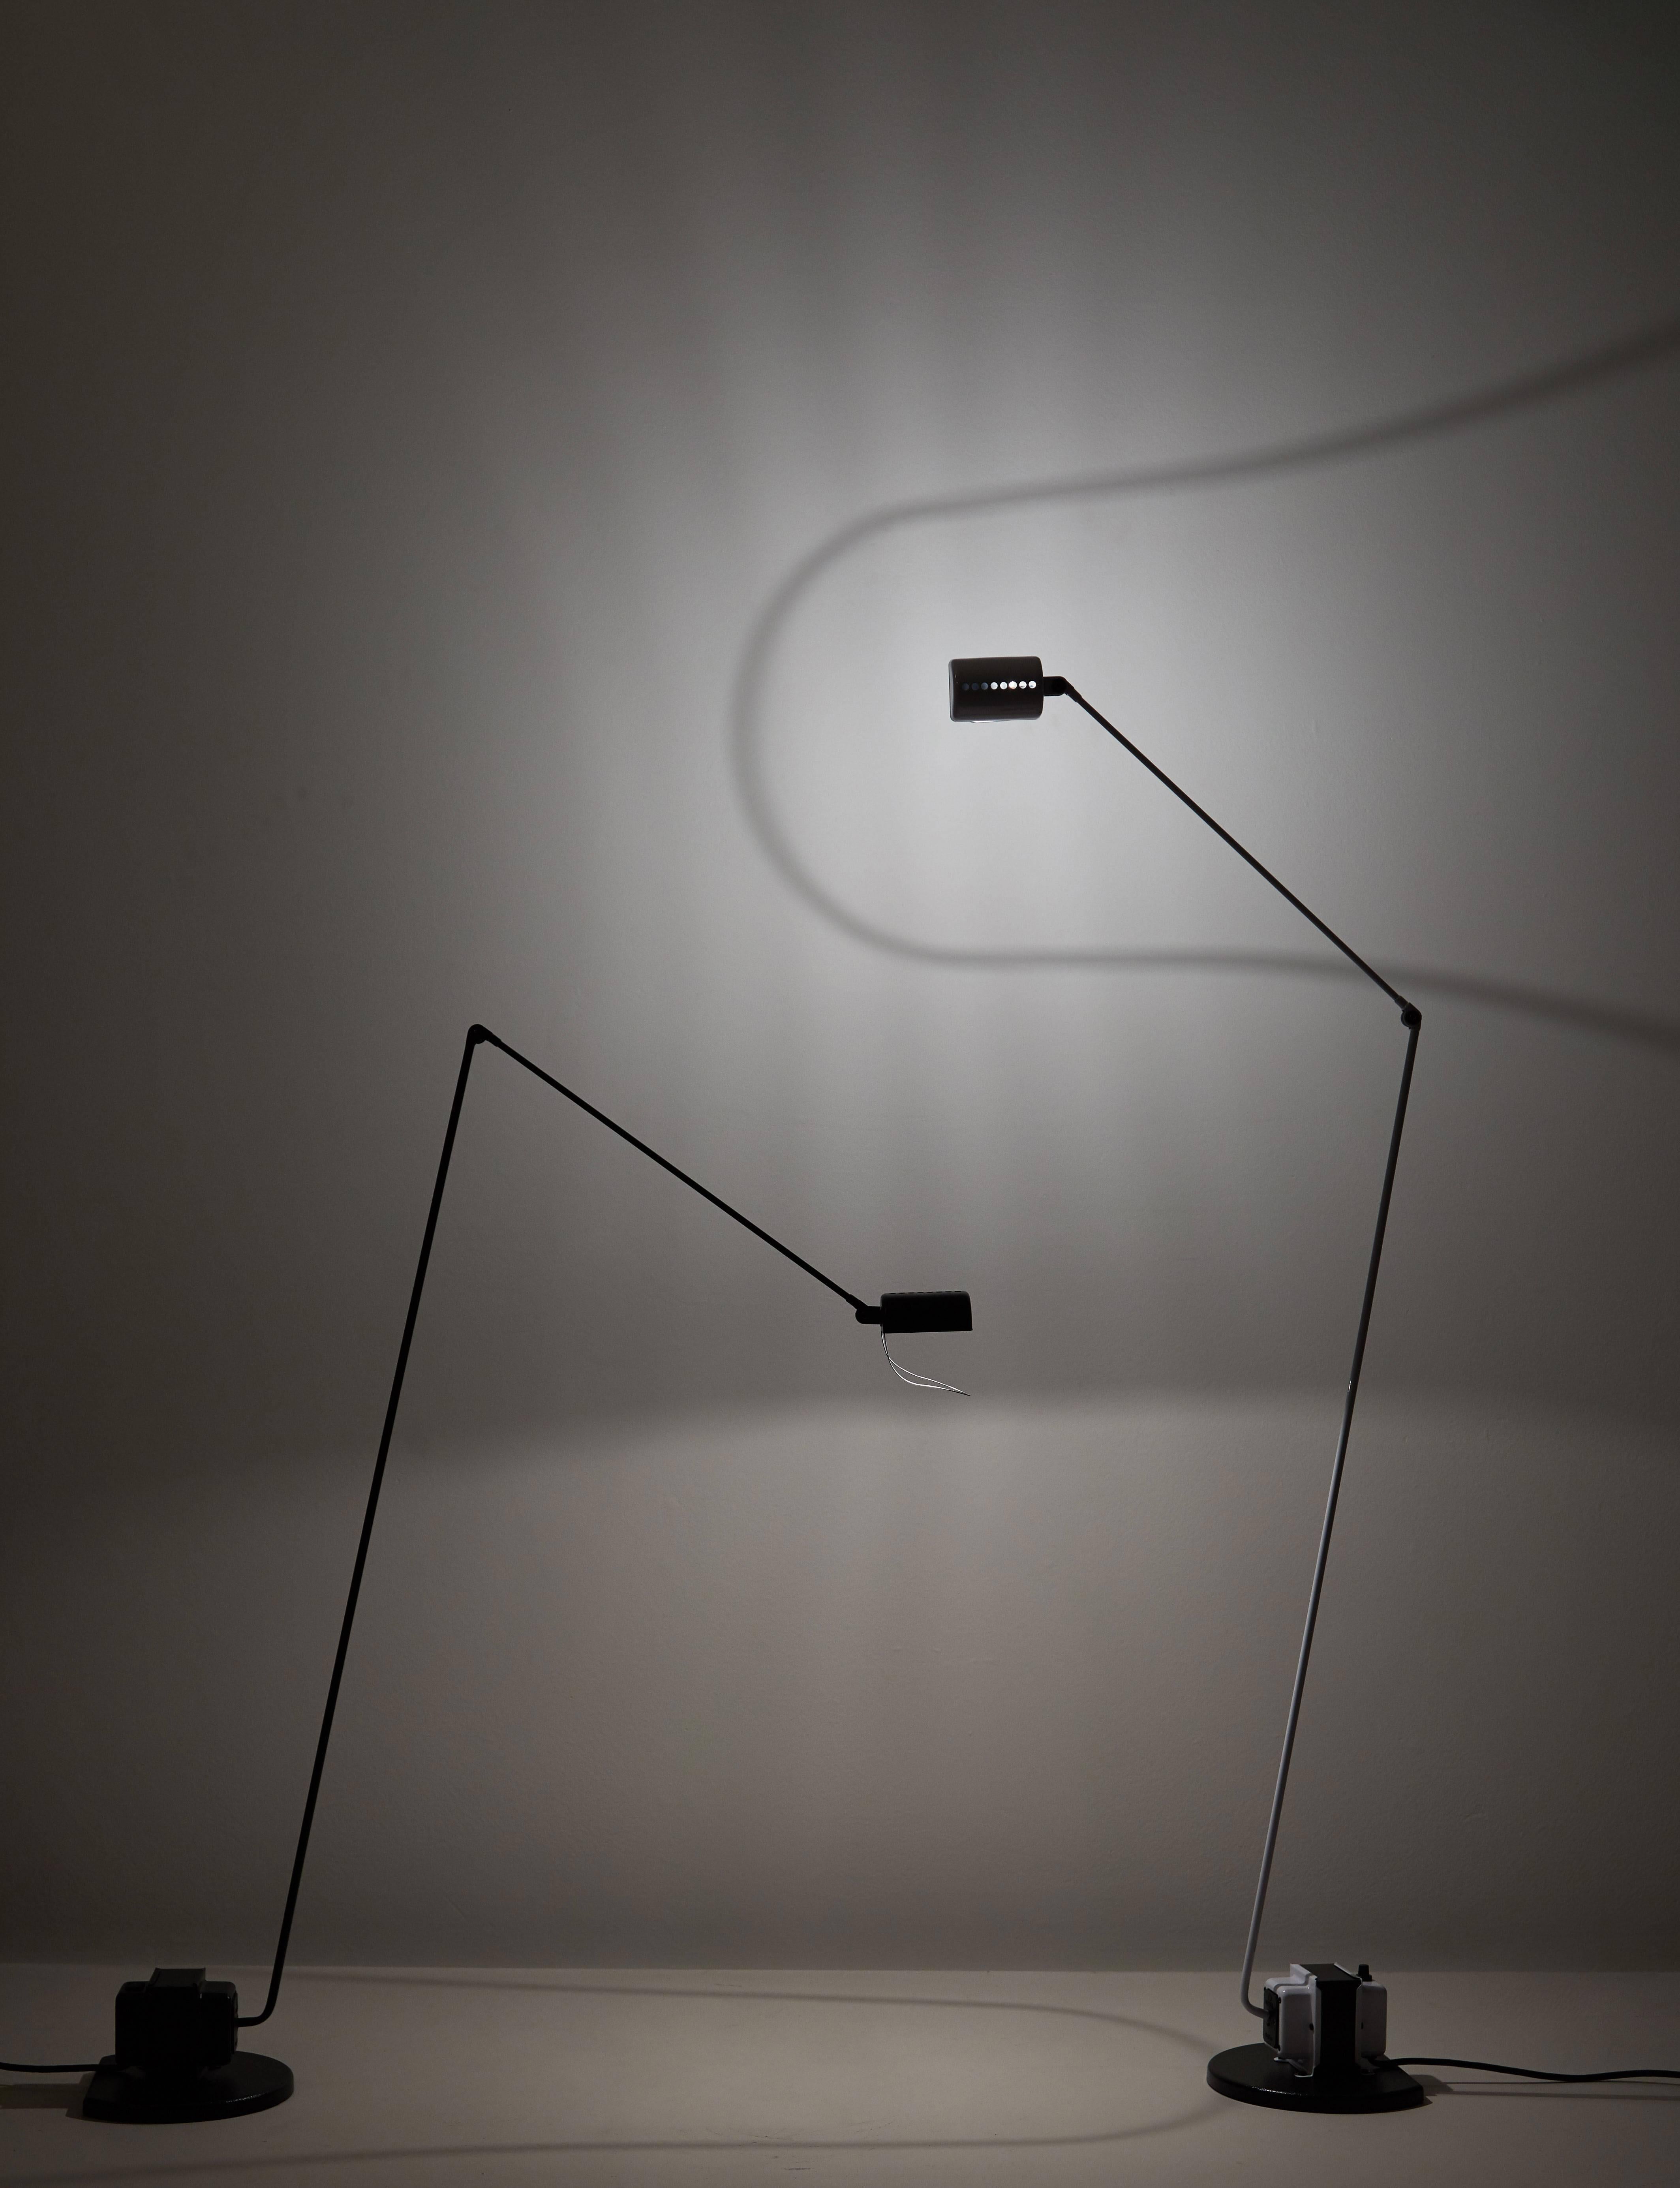 Daphine Terra Stehleuchte, ursprünglich entworfen von Tommaso Cimini in Italien, 1972. Besteht aus einem Metallrahmen mit einem um 360° schwenkbaren Arm und Diffusor sowie einem verstellbaren Schirm. Für eine G9-Halogenlampe oder eine